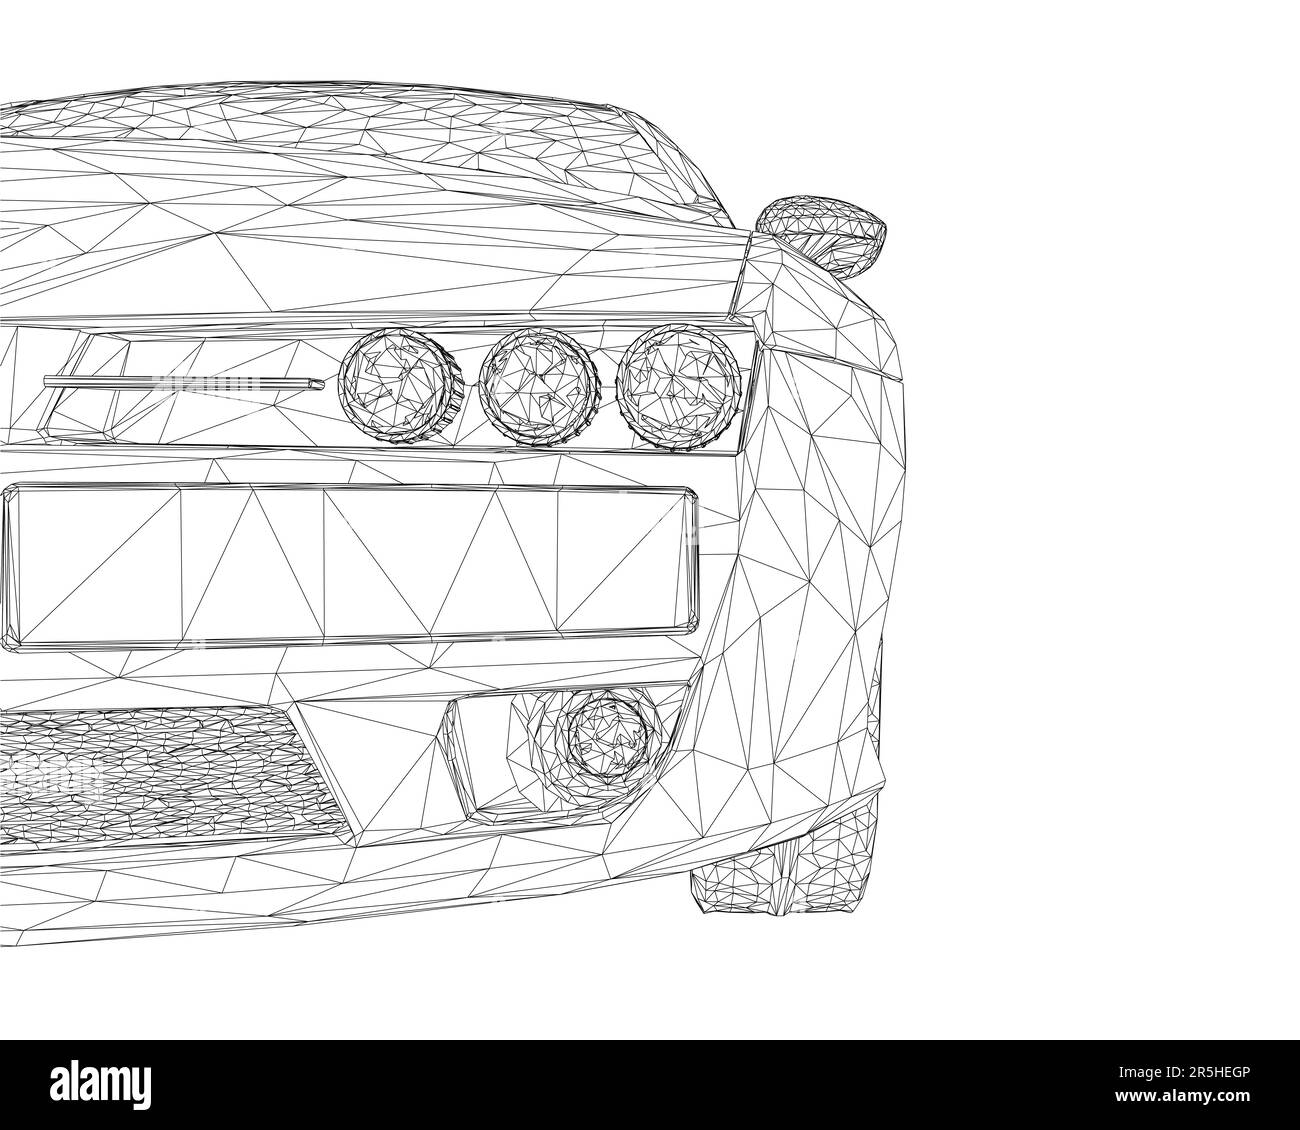 Polygonales Drahtmodell der Fahrzeugfront mit schwarzen Linien, isoliert auf weißem Hintergrund. Vorderansicht. 3D. Vektordarstellung. Stock Vektor